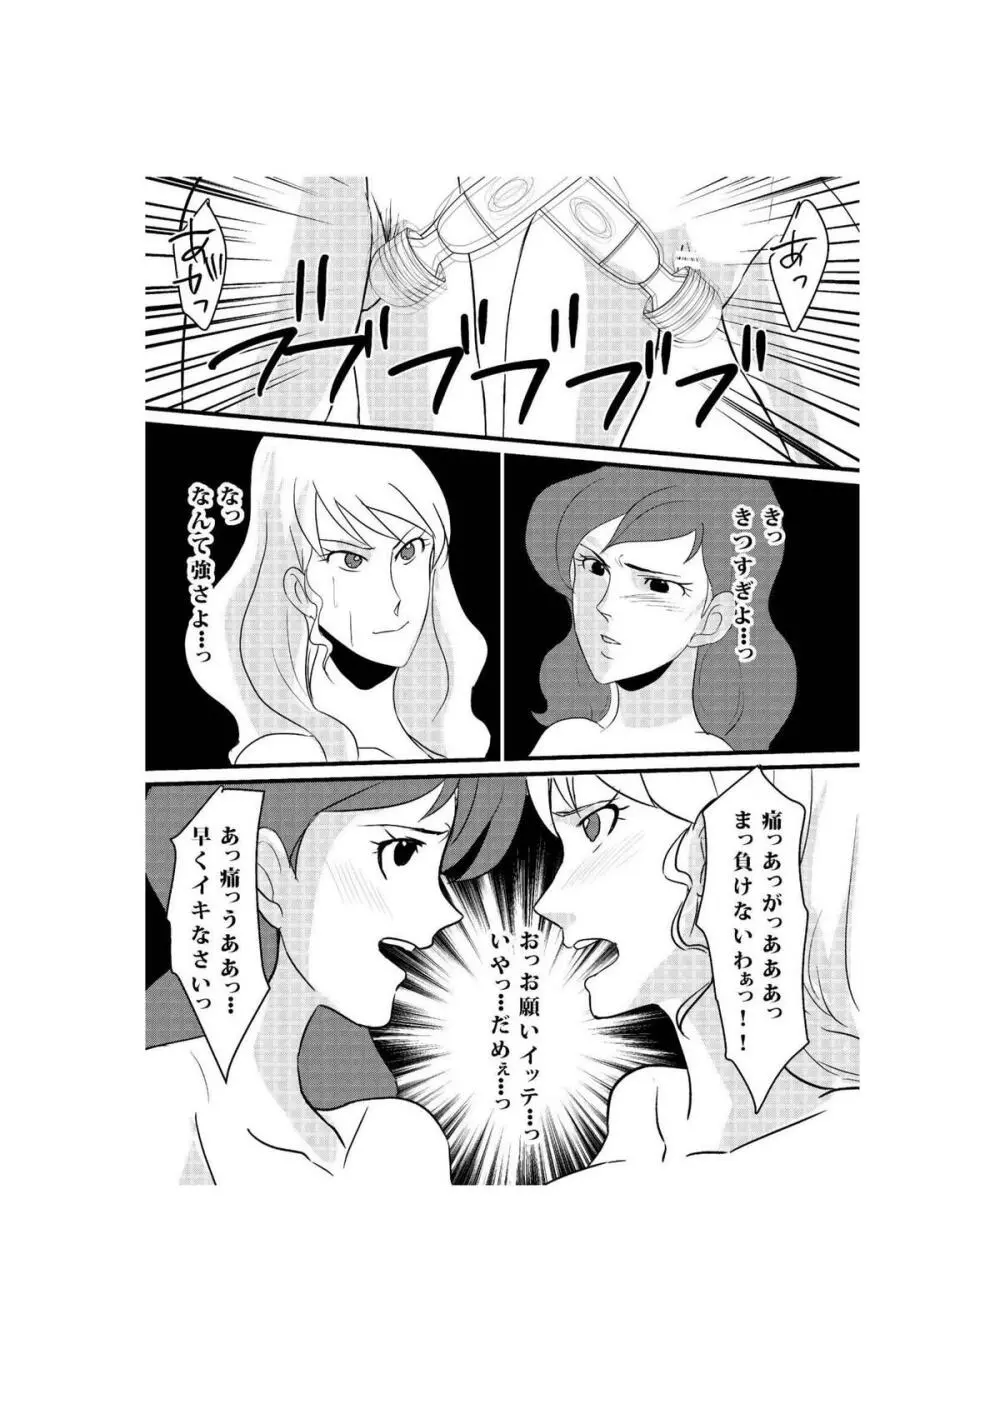 Fushi no Kyouten Ureta Onna no Tatakai - Fujiko VS Emmanuelle - page27